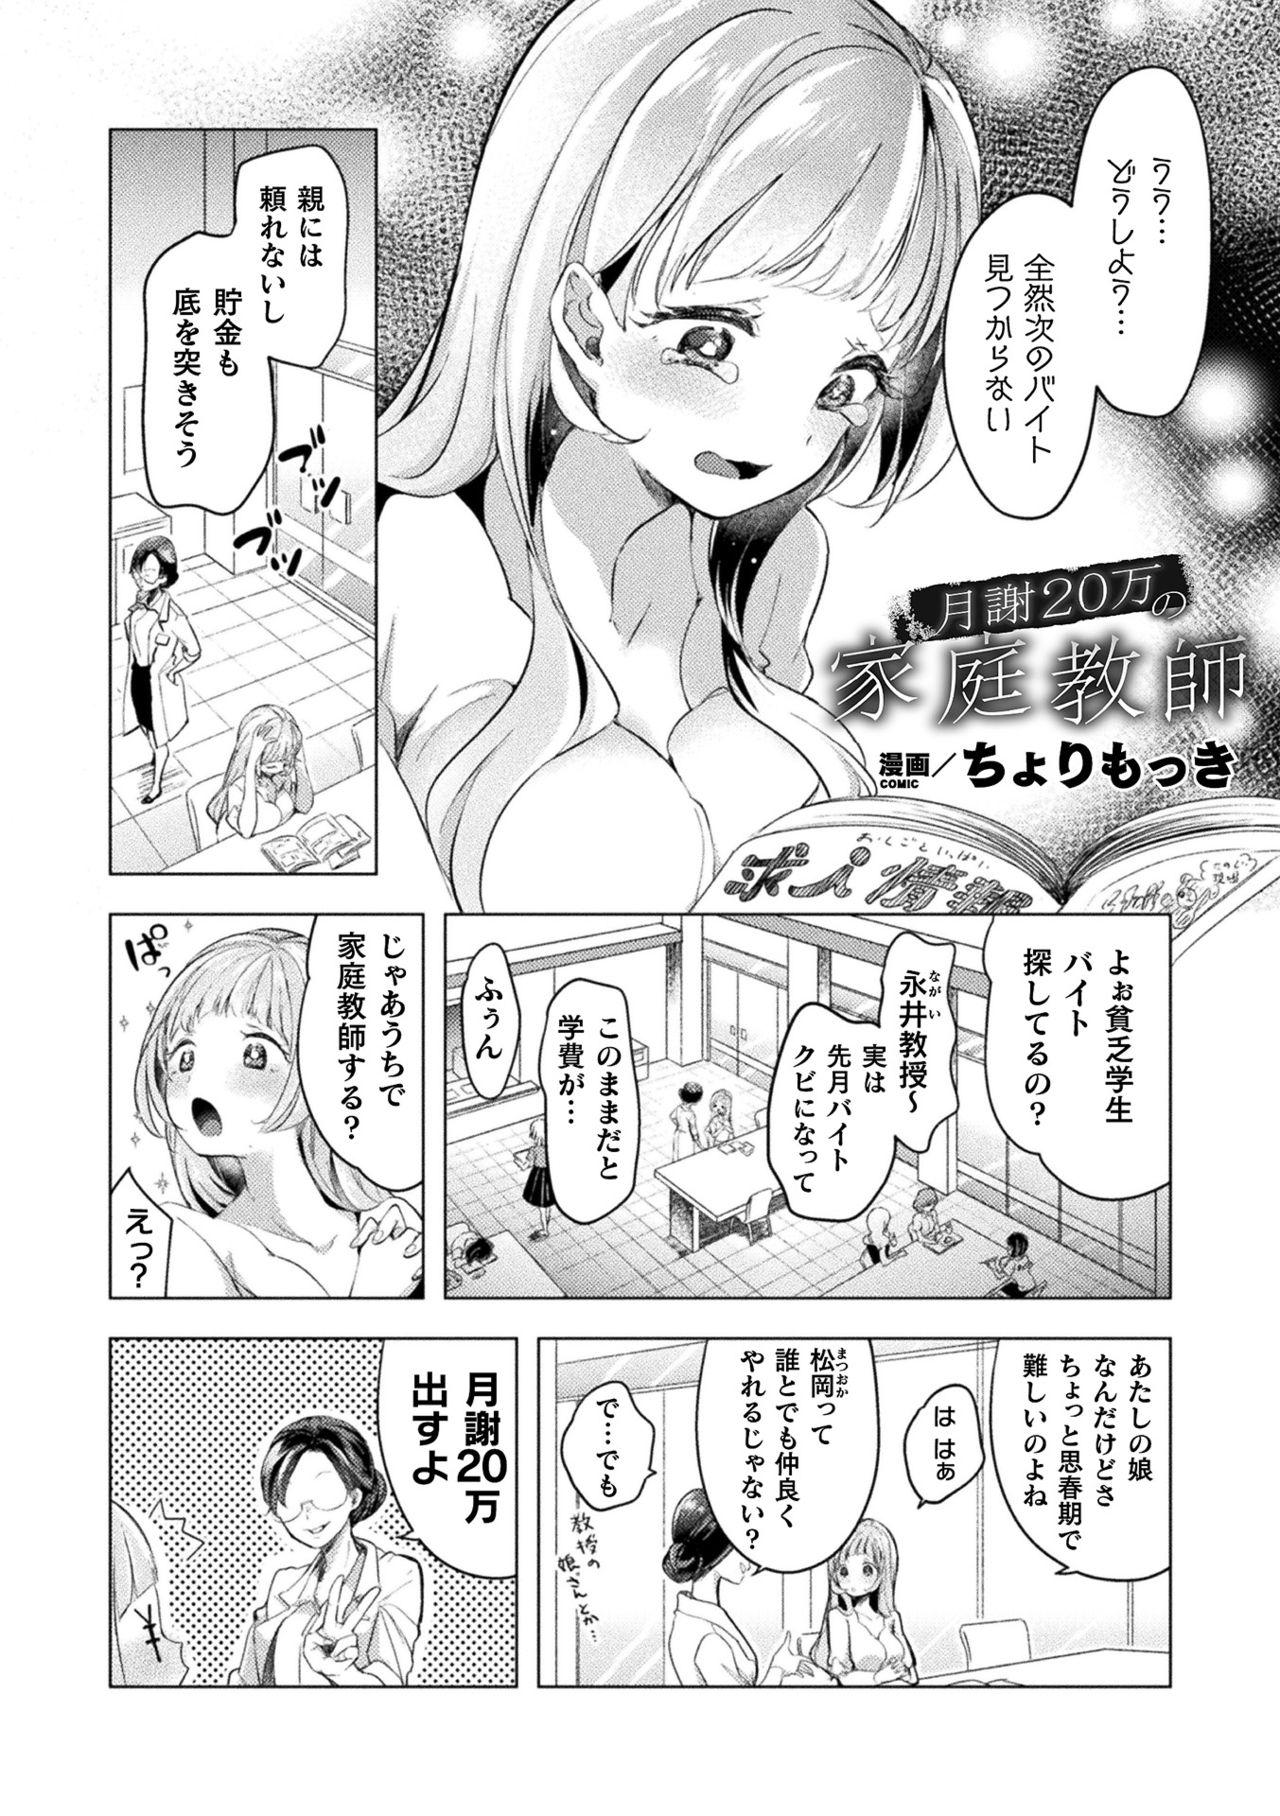 2D Comic Magazine Mesugaki vs Yasashii Onee-san Vol. 1 26